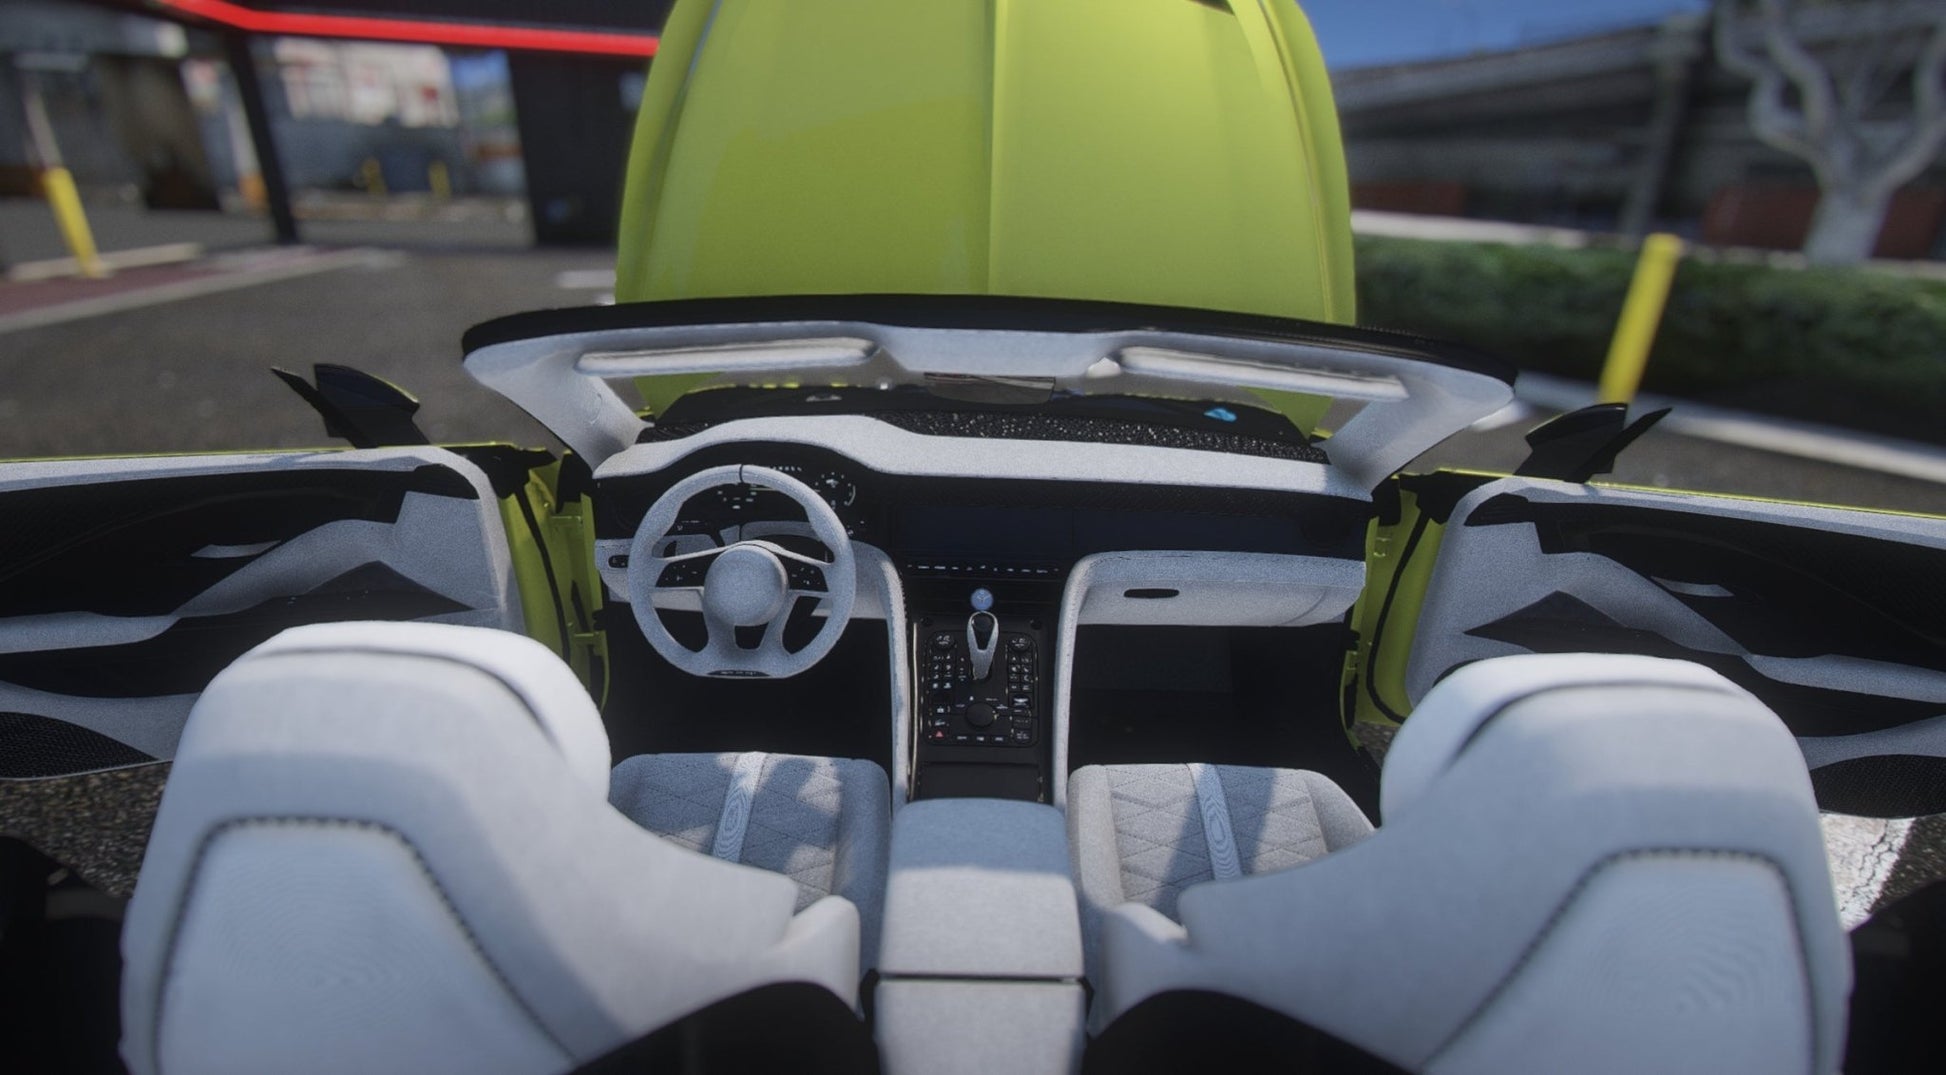 FiveM Bentley Mulliner Bacalar 2021 | Debadged - DigitalLatvia